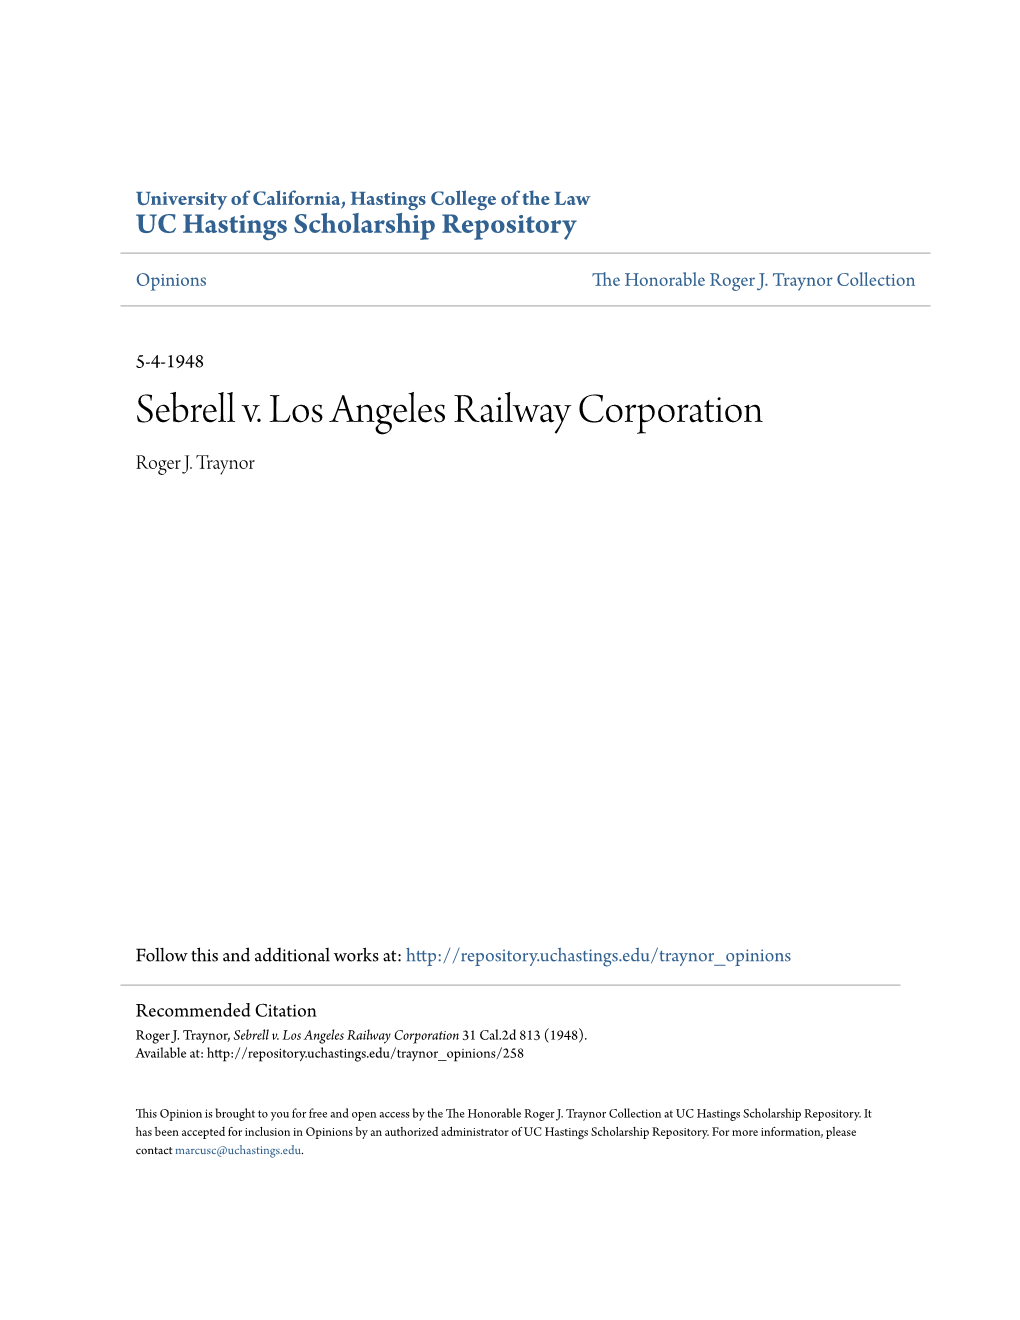 Sebrell V. Los Angeles Railway Corporation Roger J